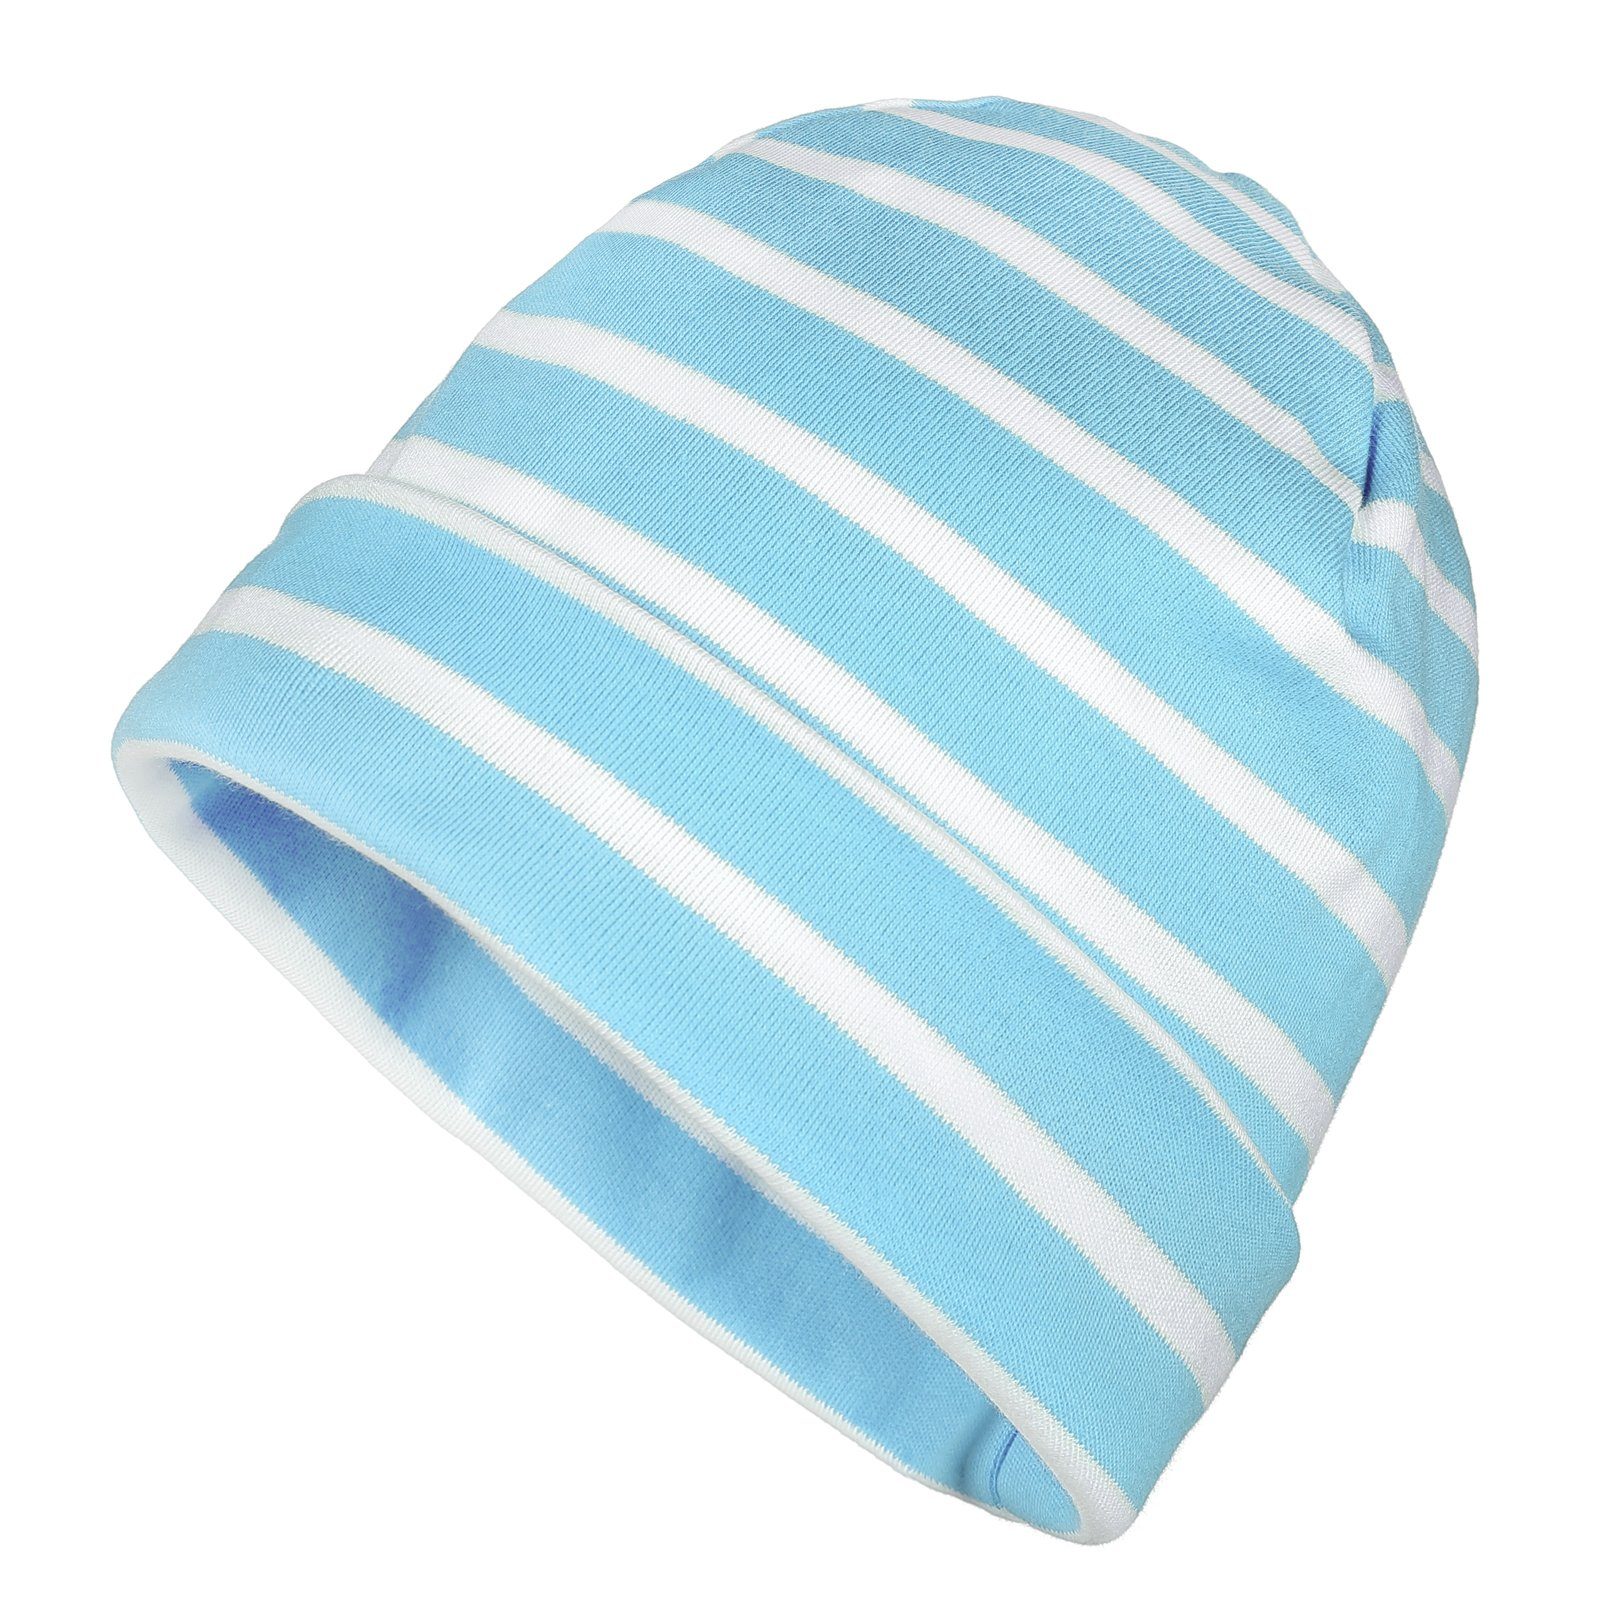 modAS Strickmütze Unisex Mütze Streifen für Kinder & Erwachsene - Ringelmütze Baumwolle (18) aqua / weiß